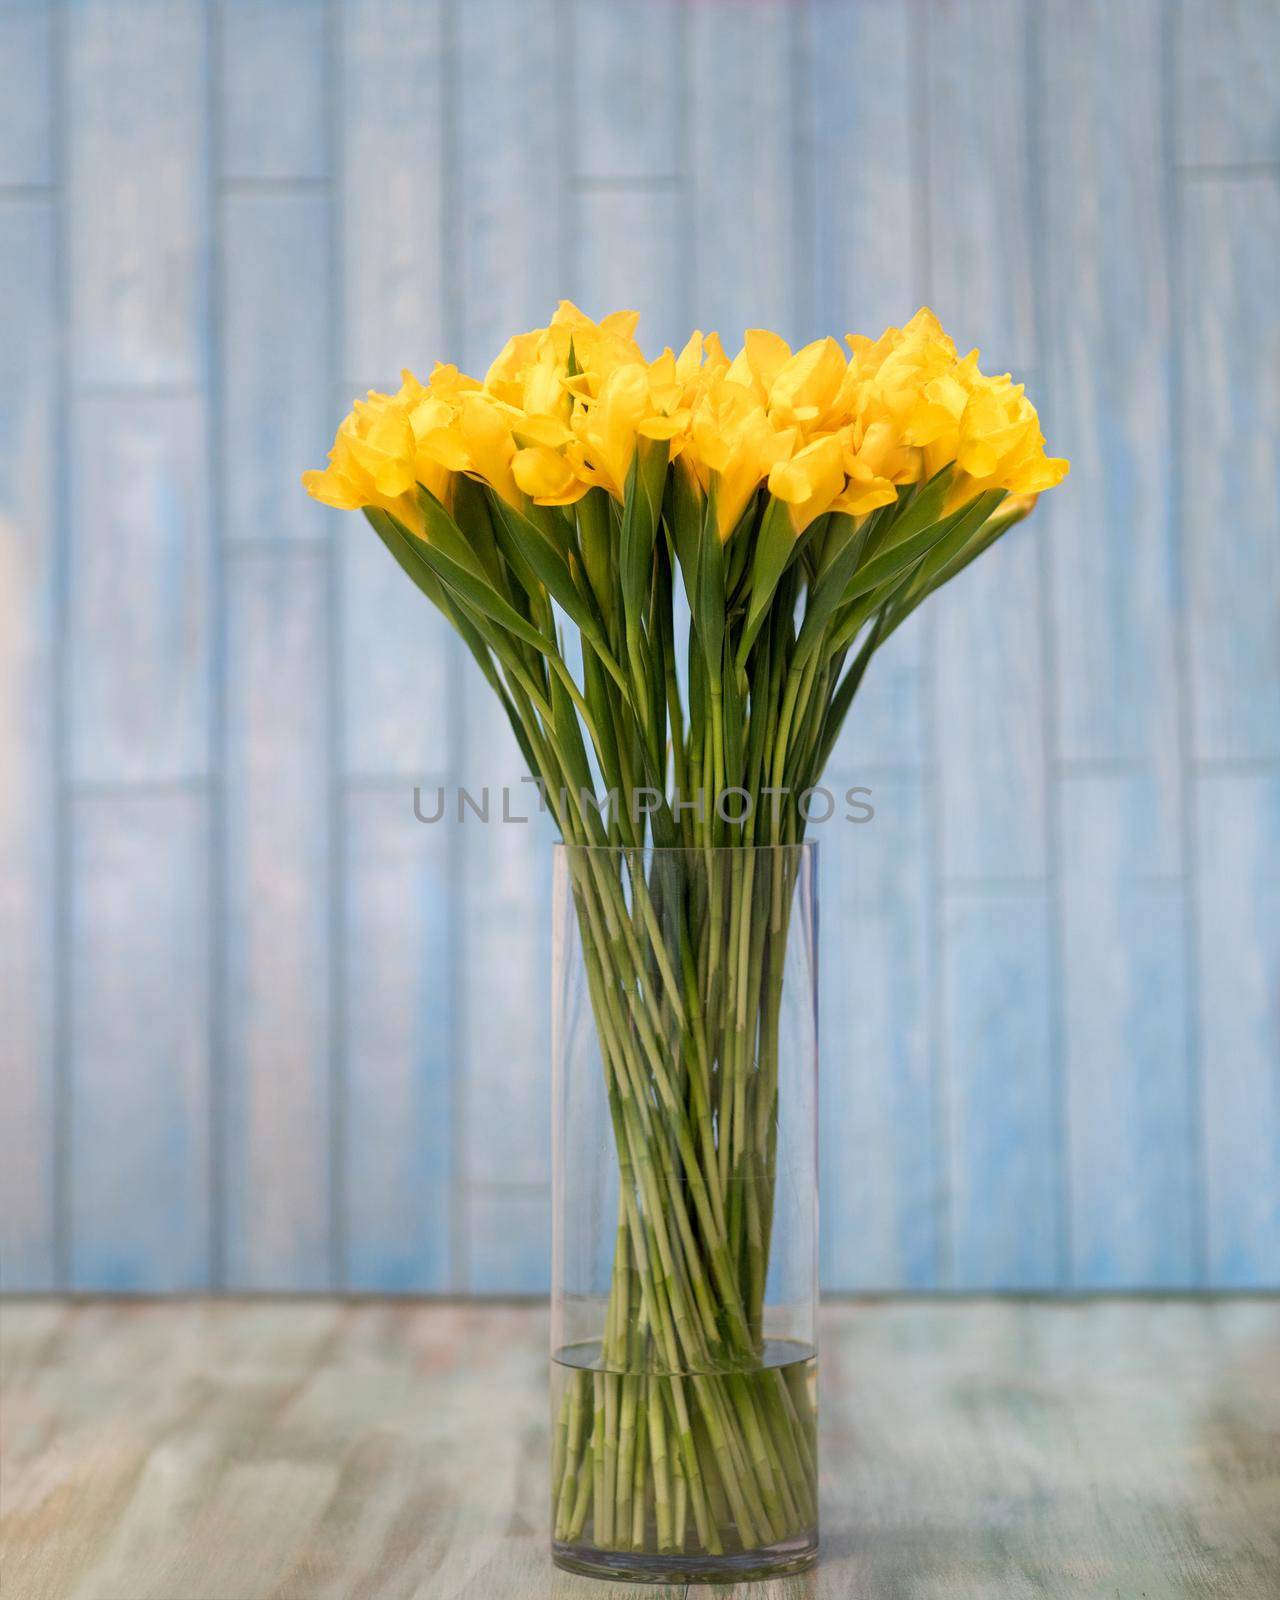 Yellow Dutch Iris Golden Beauty flower by ferhad